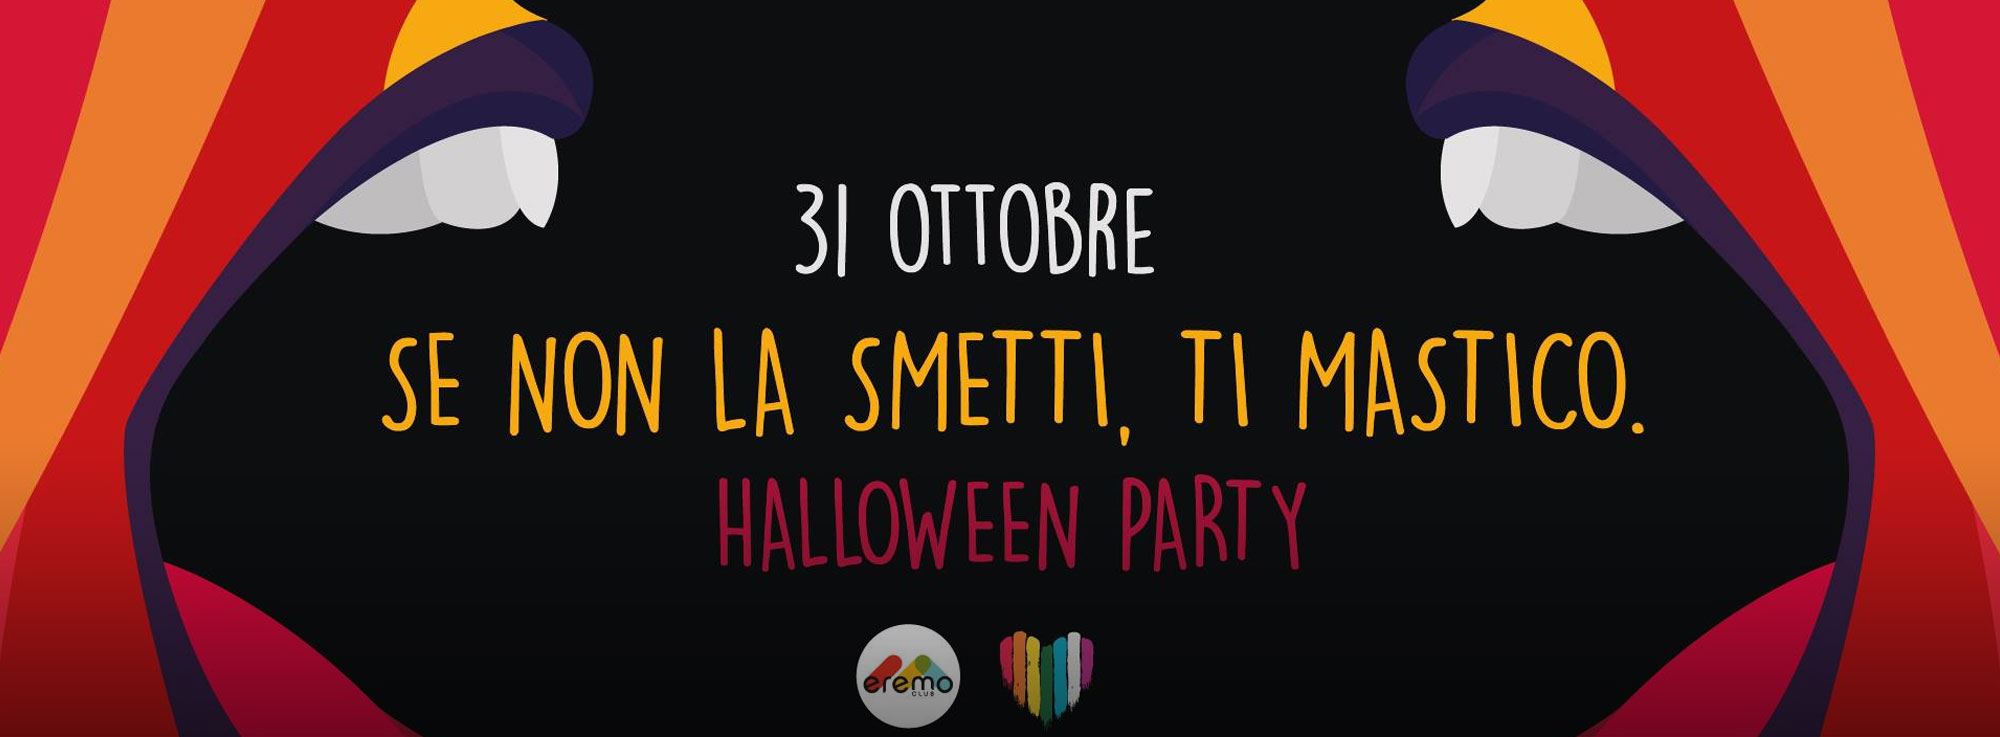 Giovinazzo: Halloween Party e Dente live all’Eremo